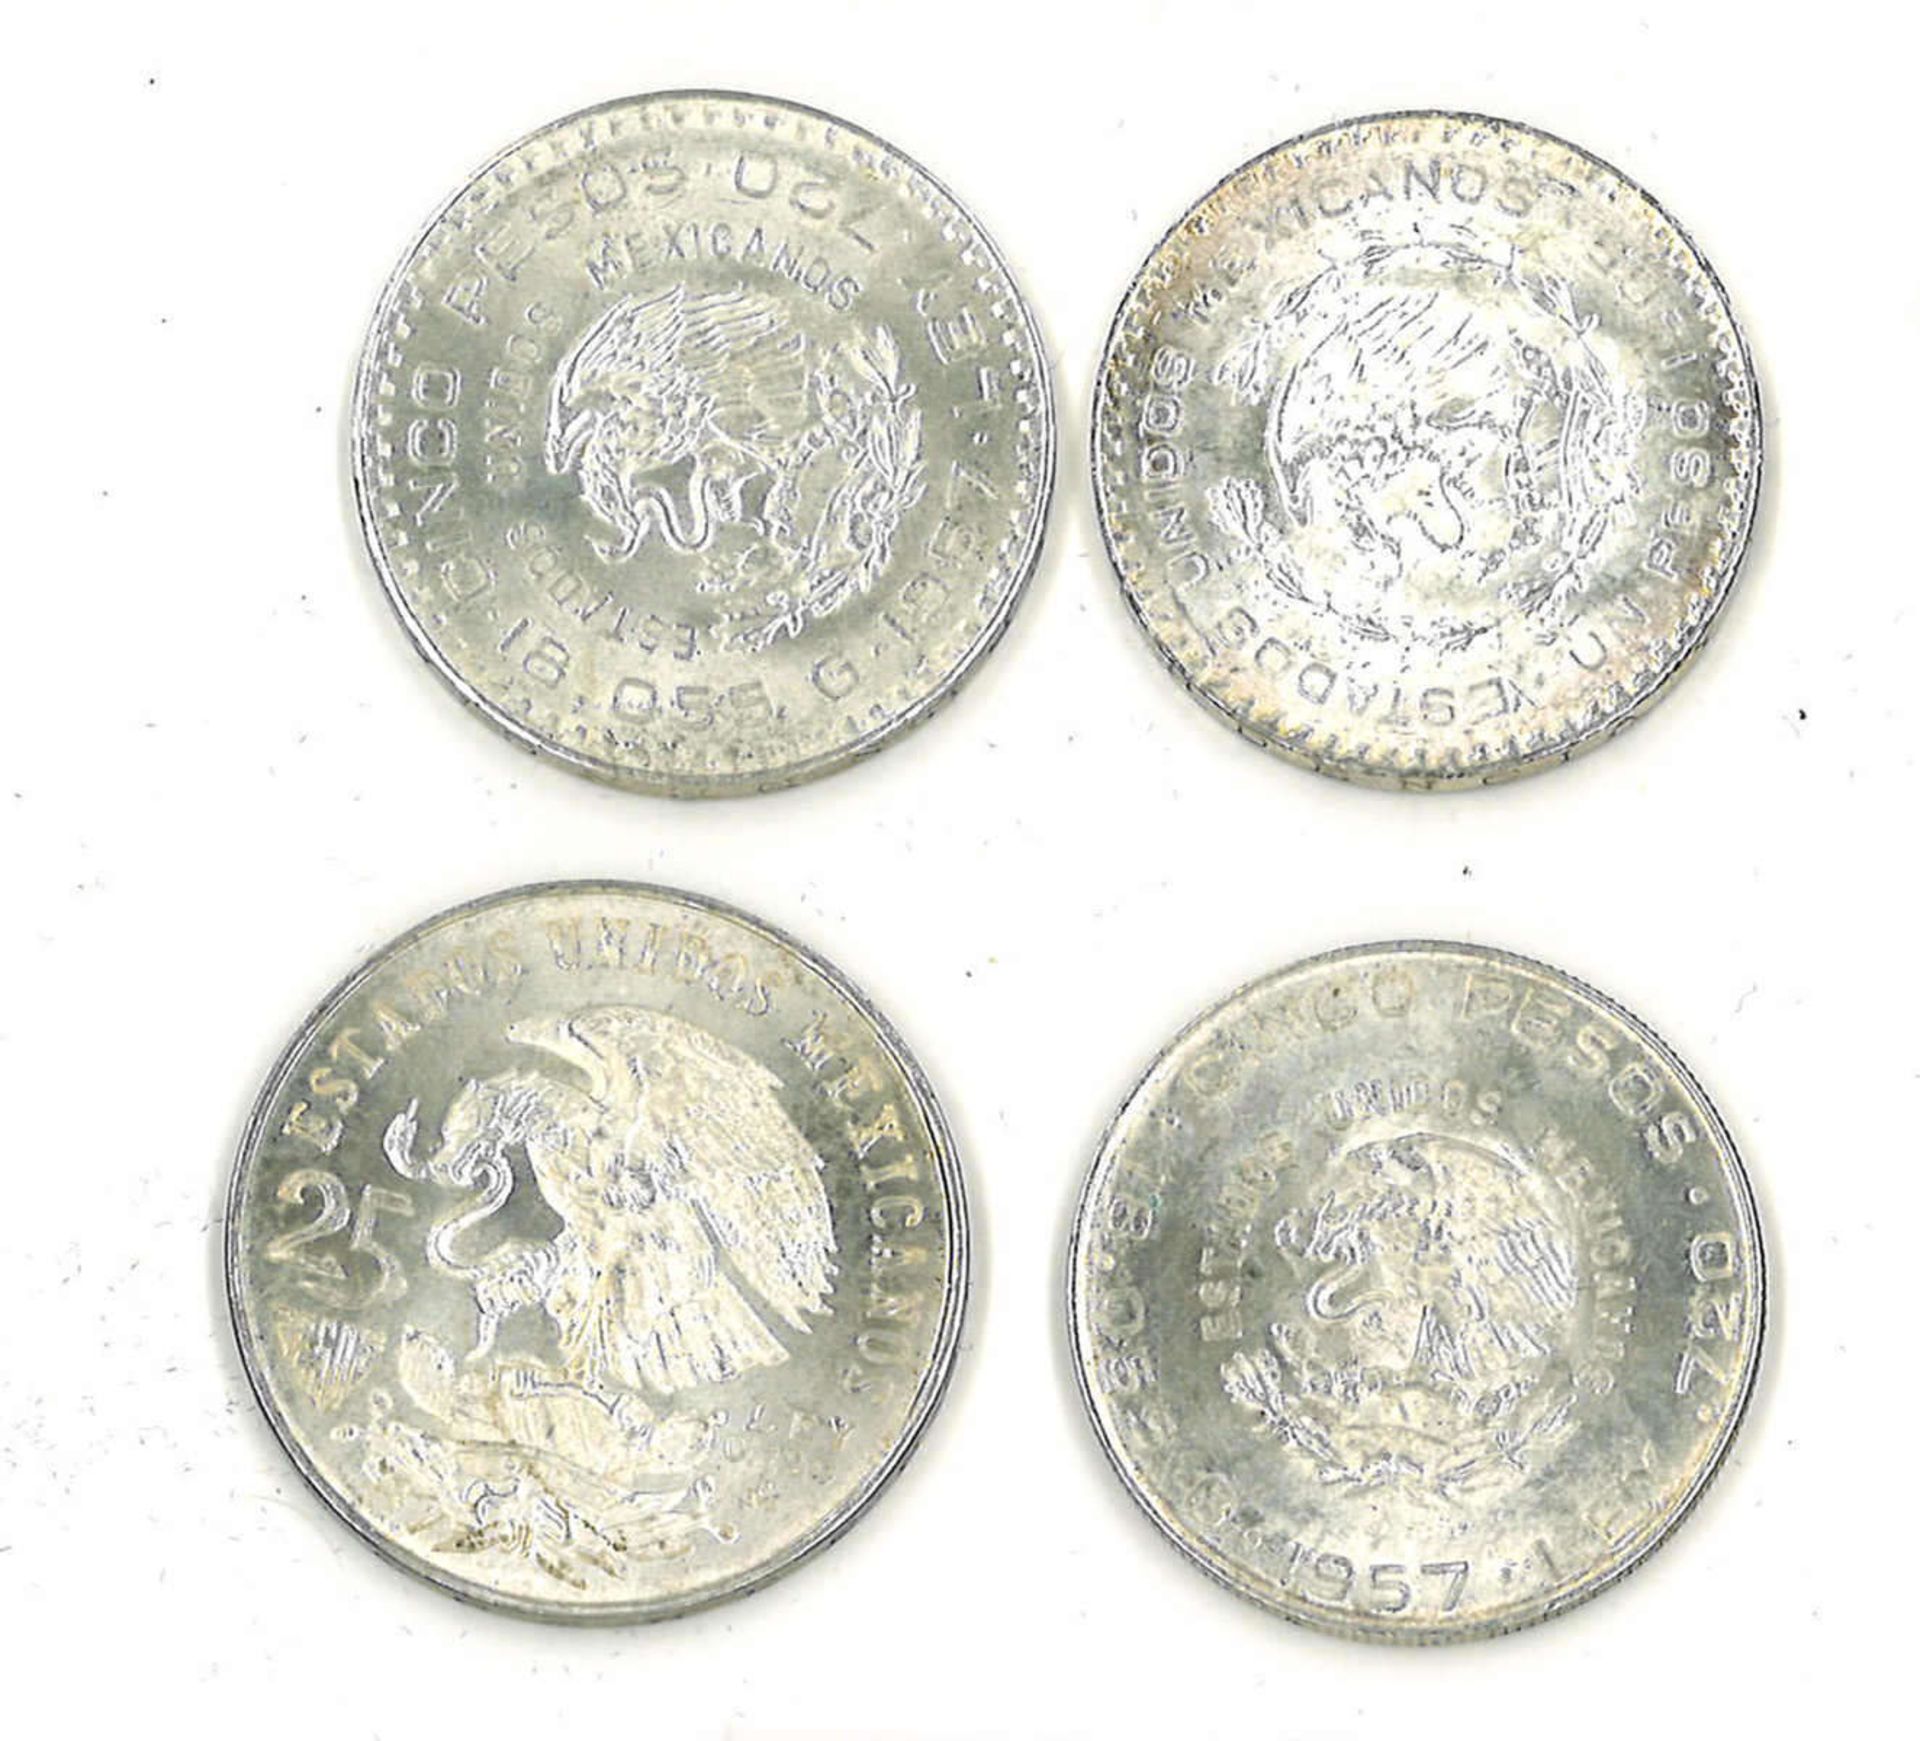 kleines Lot Mexico Silbermünzen, insgesamt 4 Stück. Bitte besichtigensmall lot Mexico silver